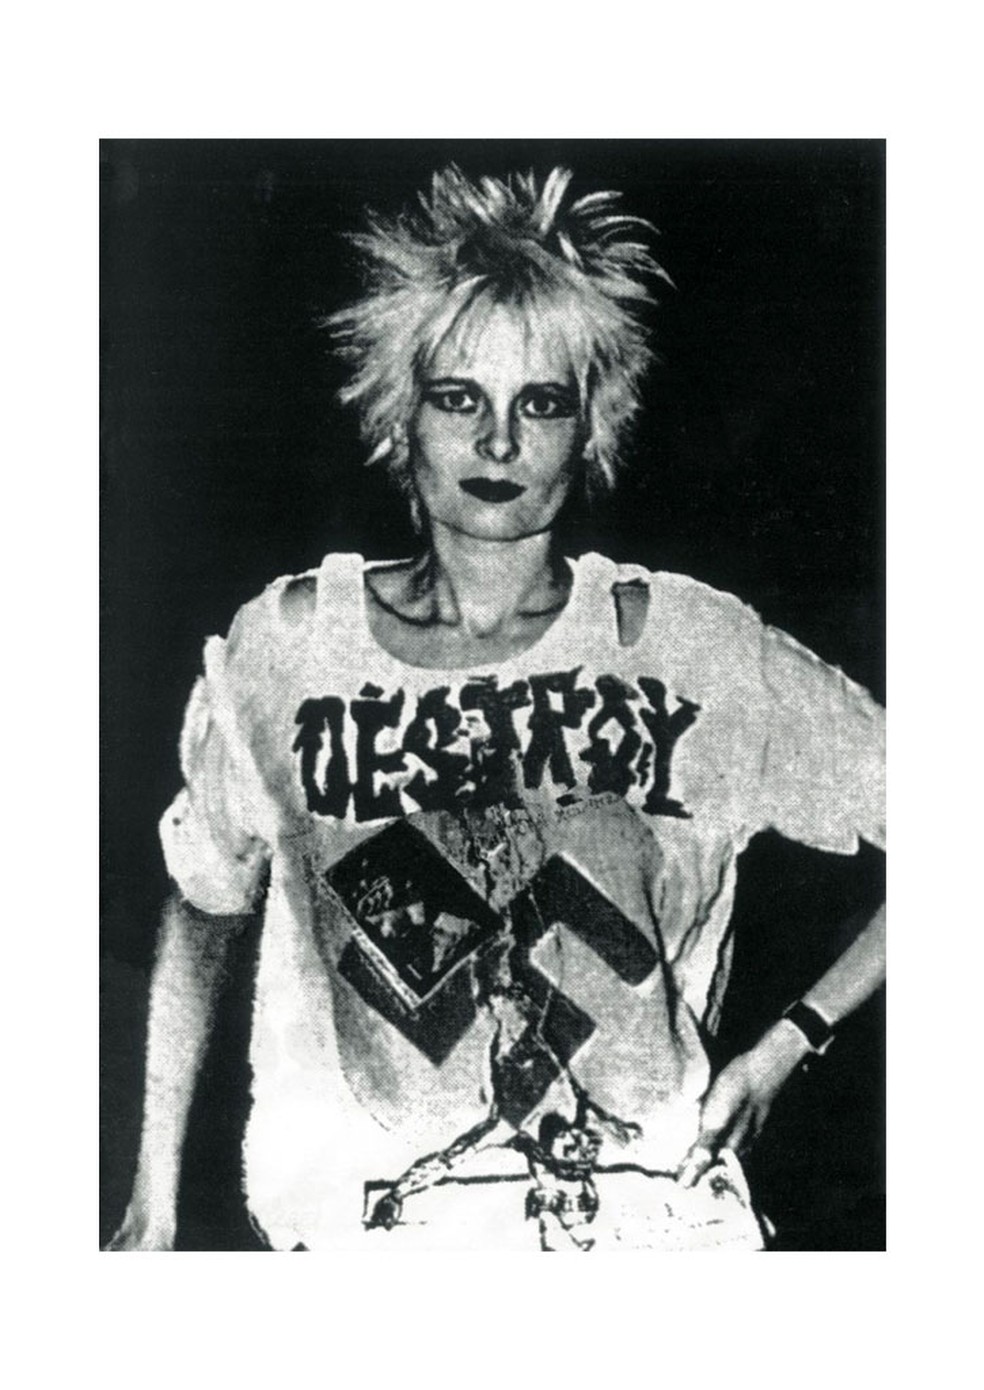 Vivienne Westwood com uma das camisetas icônicas exibindo uma suástica com a palavra "Destroy" [destruir] — Foto: viviennewestwood.com